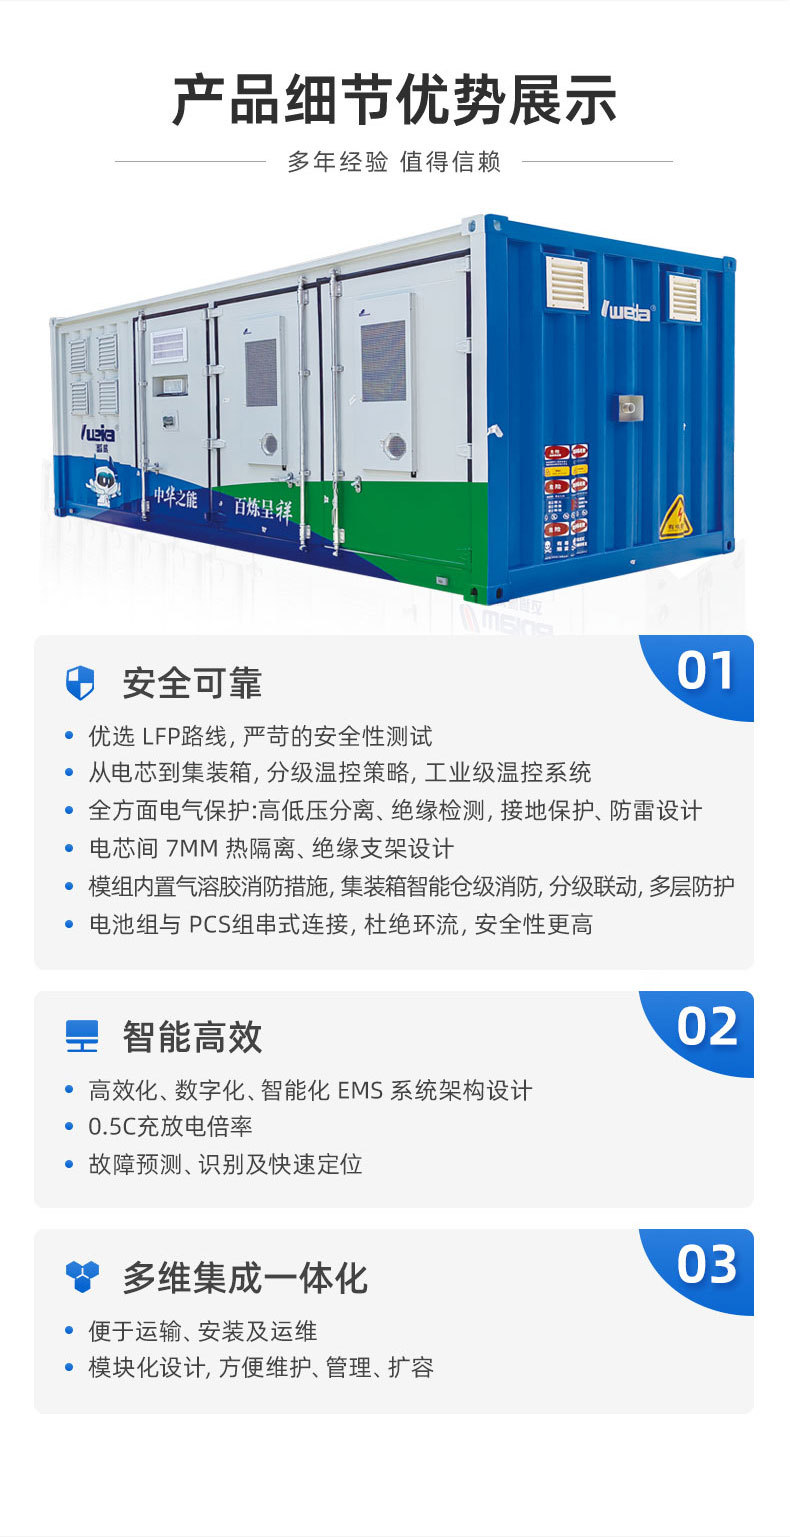 CESS500kW-1075kWh安全高效削峰填谷集装箱储能电池CESS集装箱储能系统 